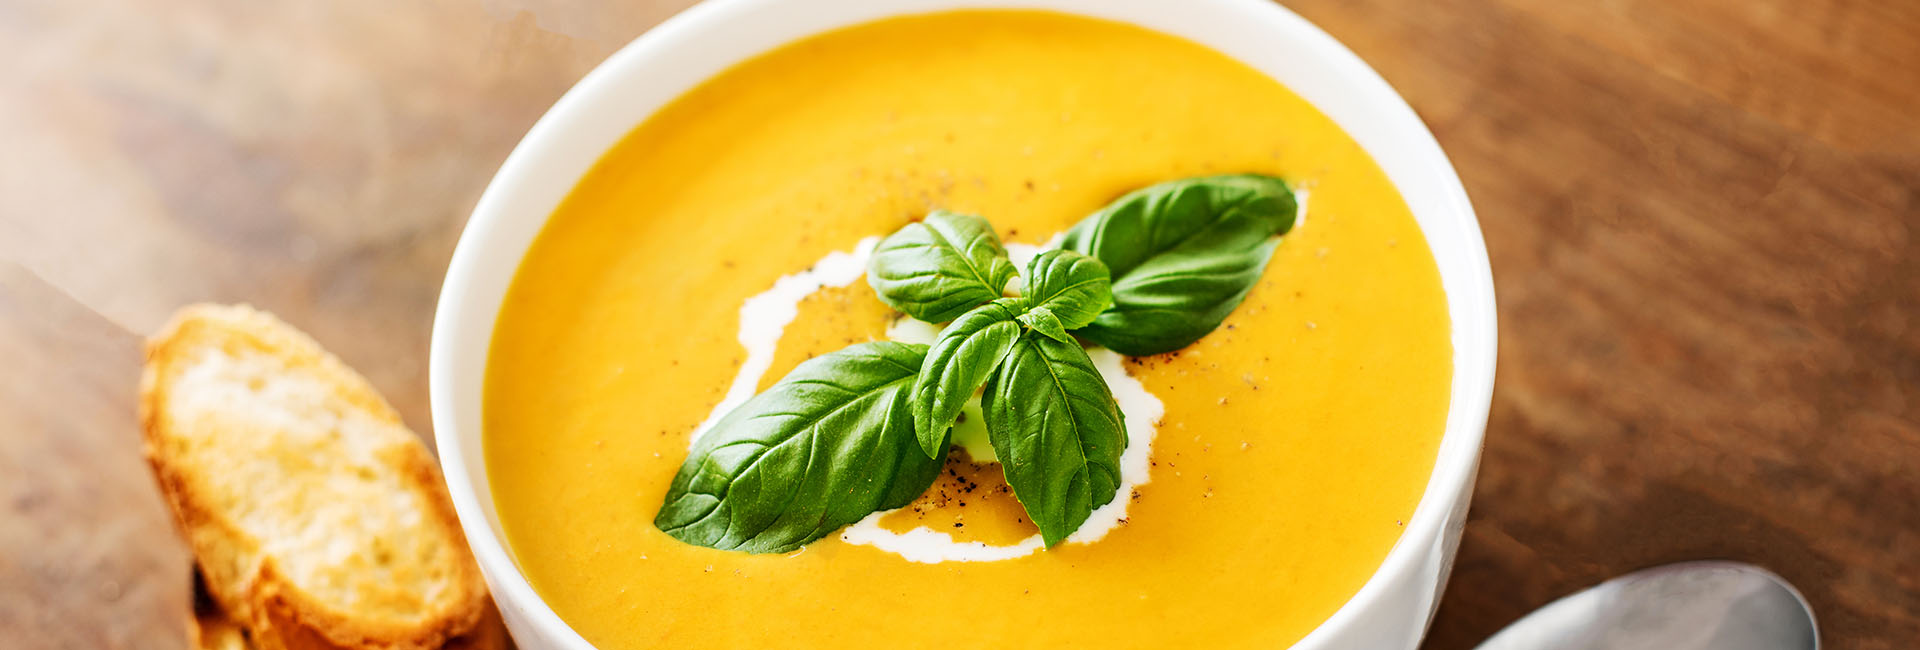 Soups, Seasonings And Savories